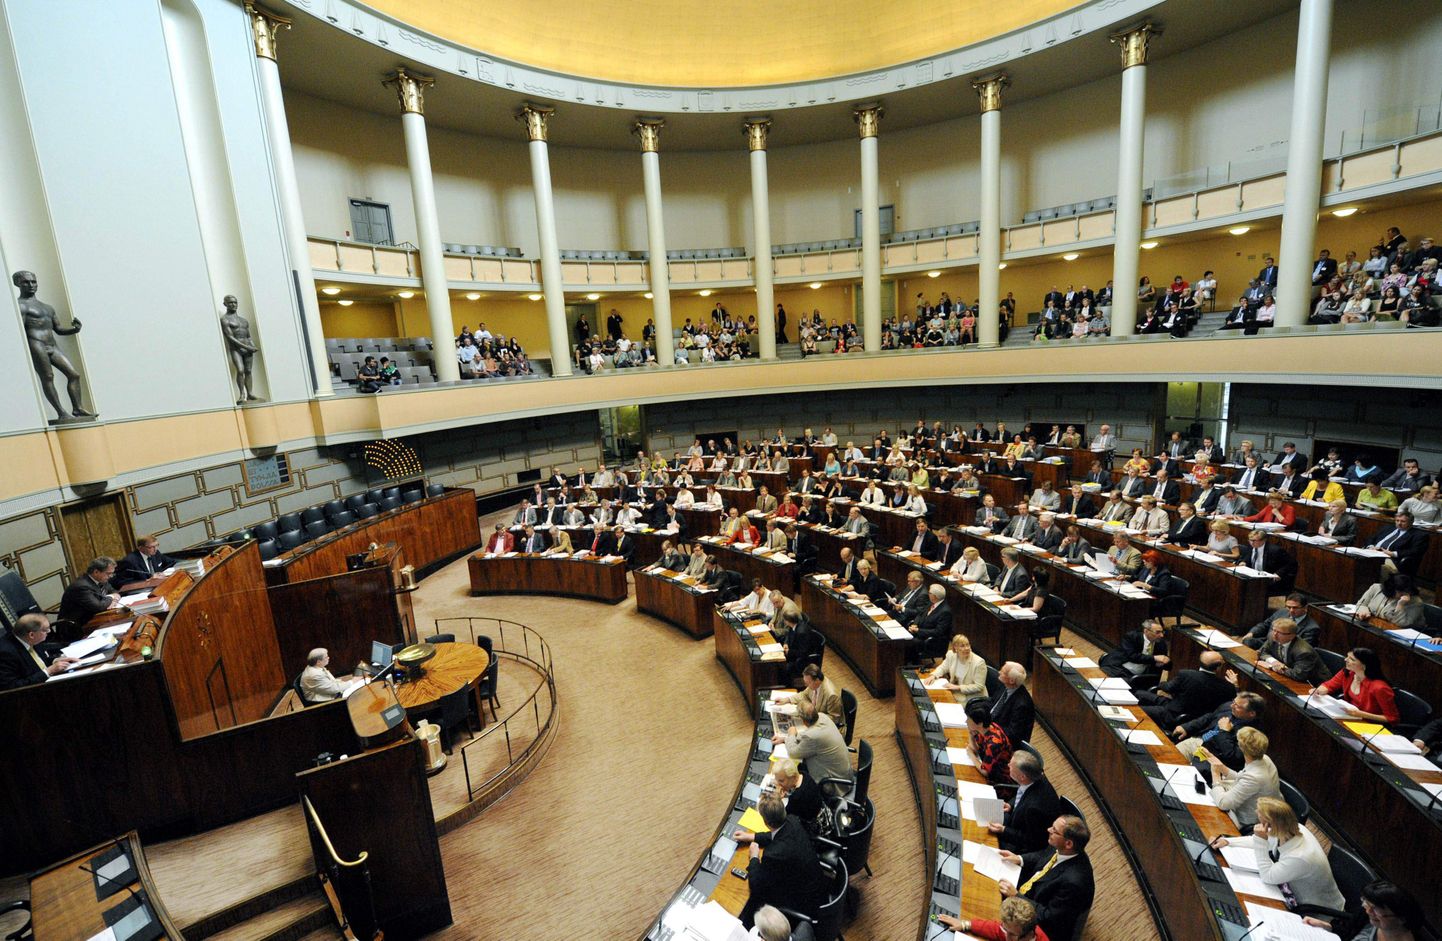 Soome parlamendi istungitesaal.